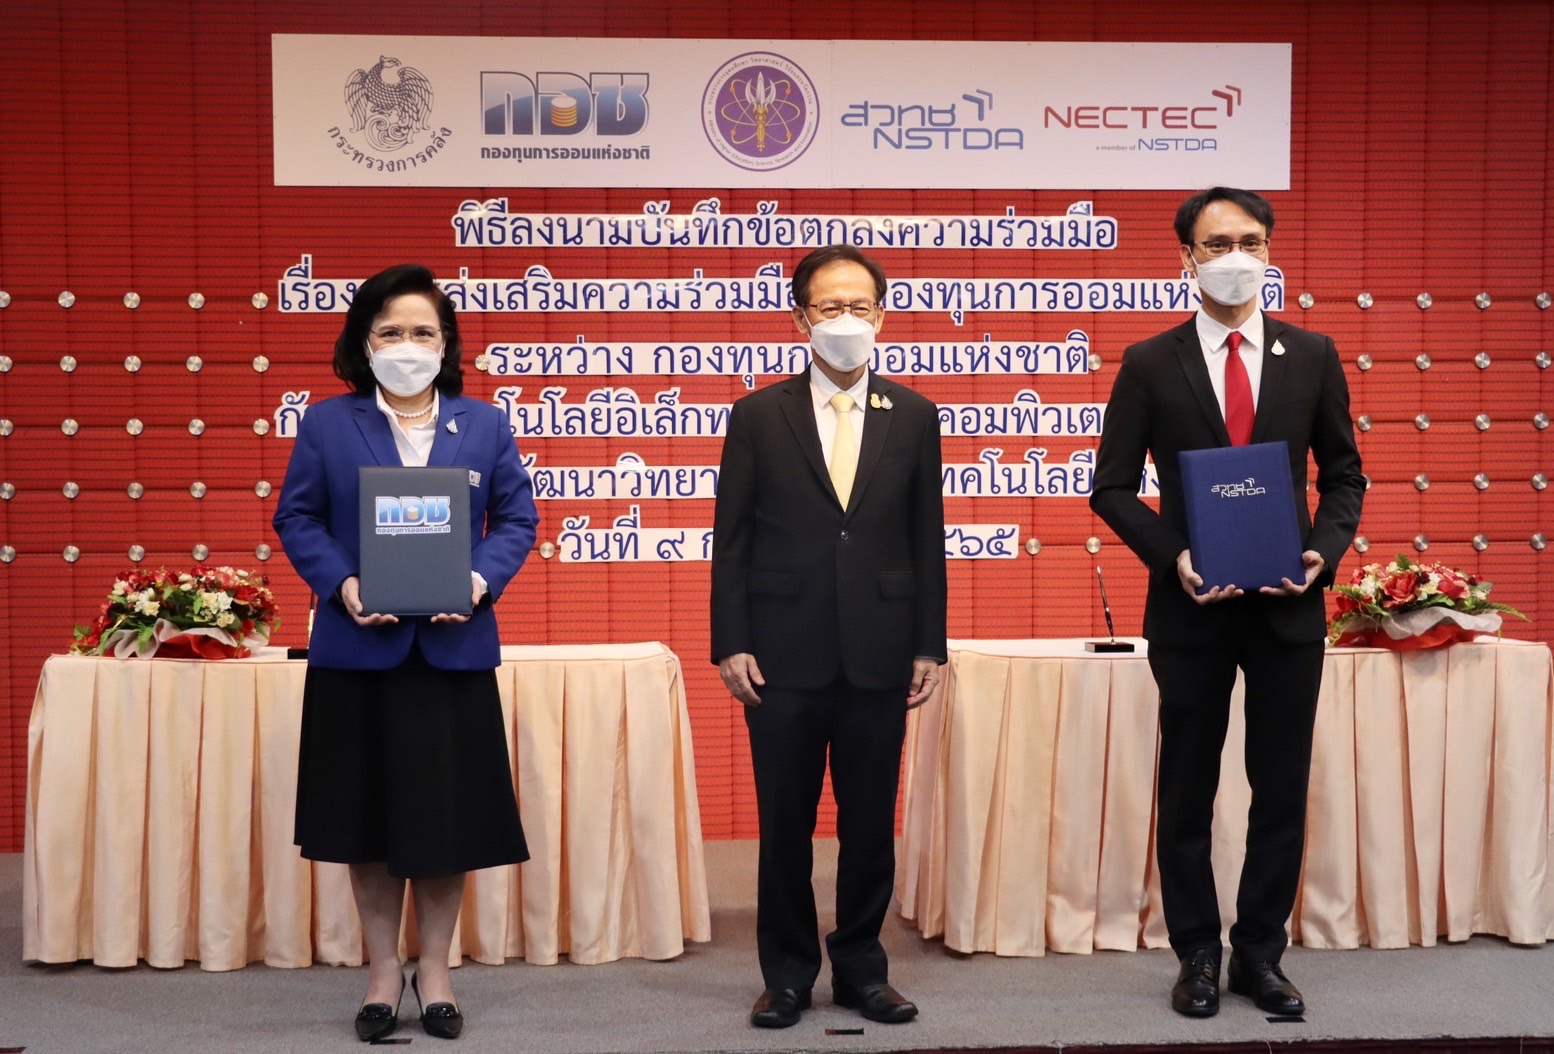 “กอช. ร่วมมือ เนคเทค สวทช. พัฒนาระบบบริการสมาชิกด้วยเทคโนโลยีที่ทันสมัย สอดรับแผนพัฒนารัฐบาลดิจิทัลประเทศไทย พ.ศ. 2563-2565”